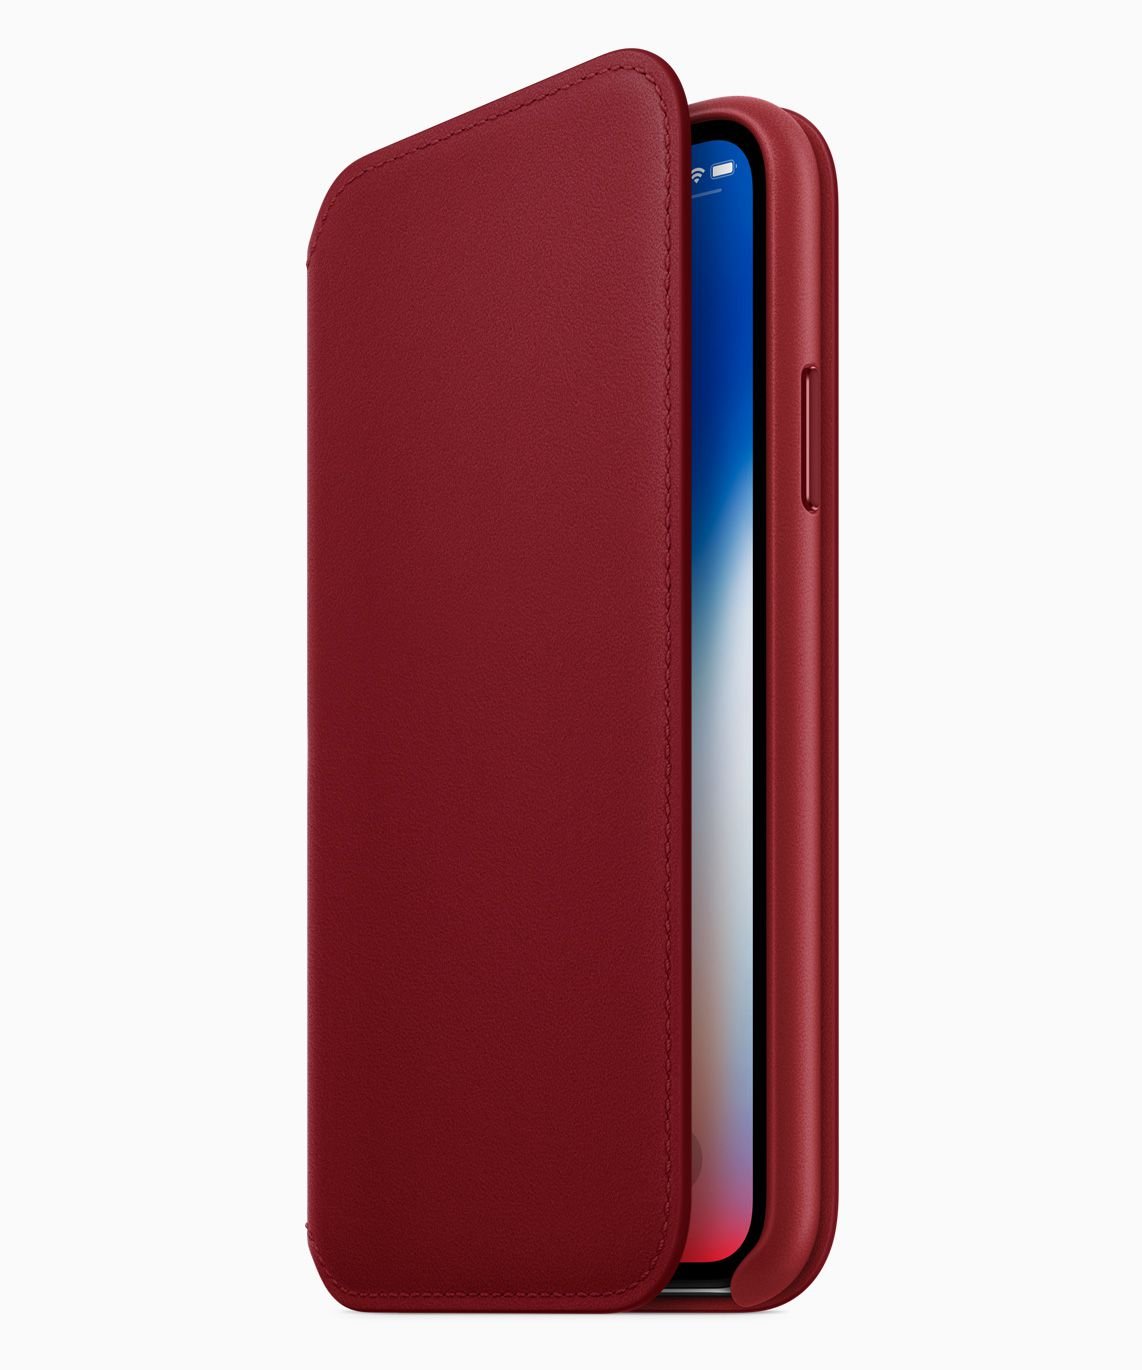 PRODUCT(RED) ile Kırmızıya İlk Boyanan, iPhone 7 İdi